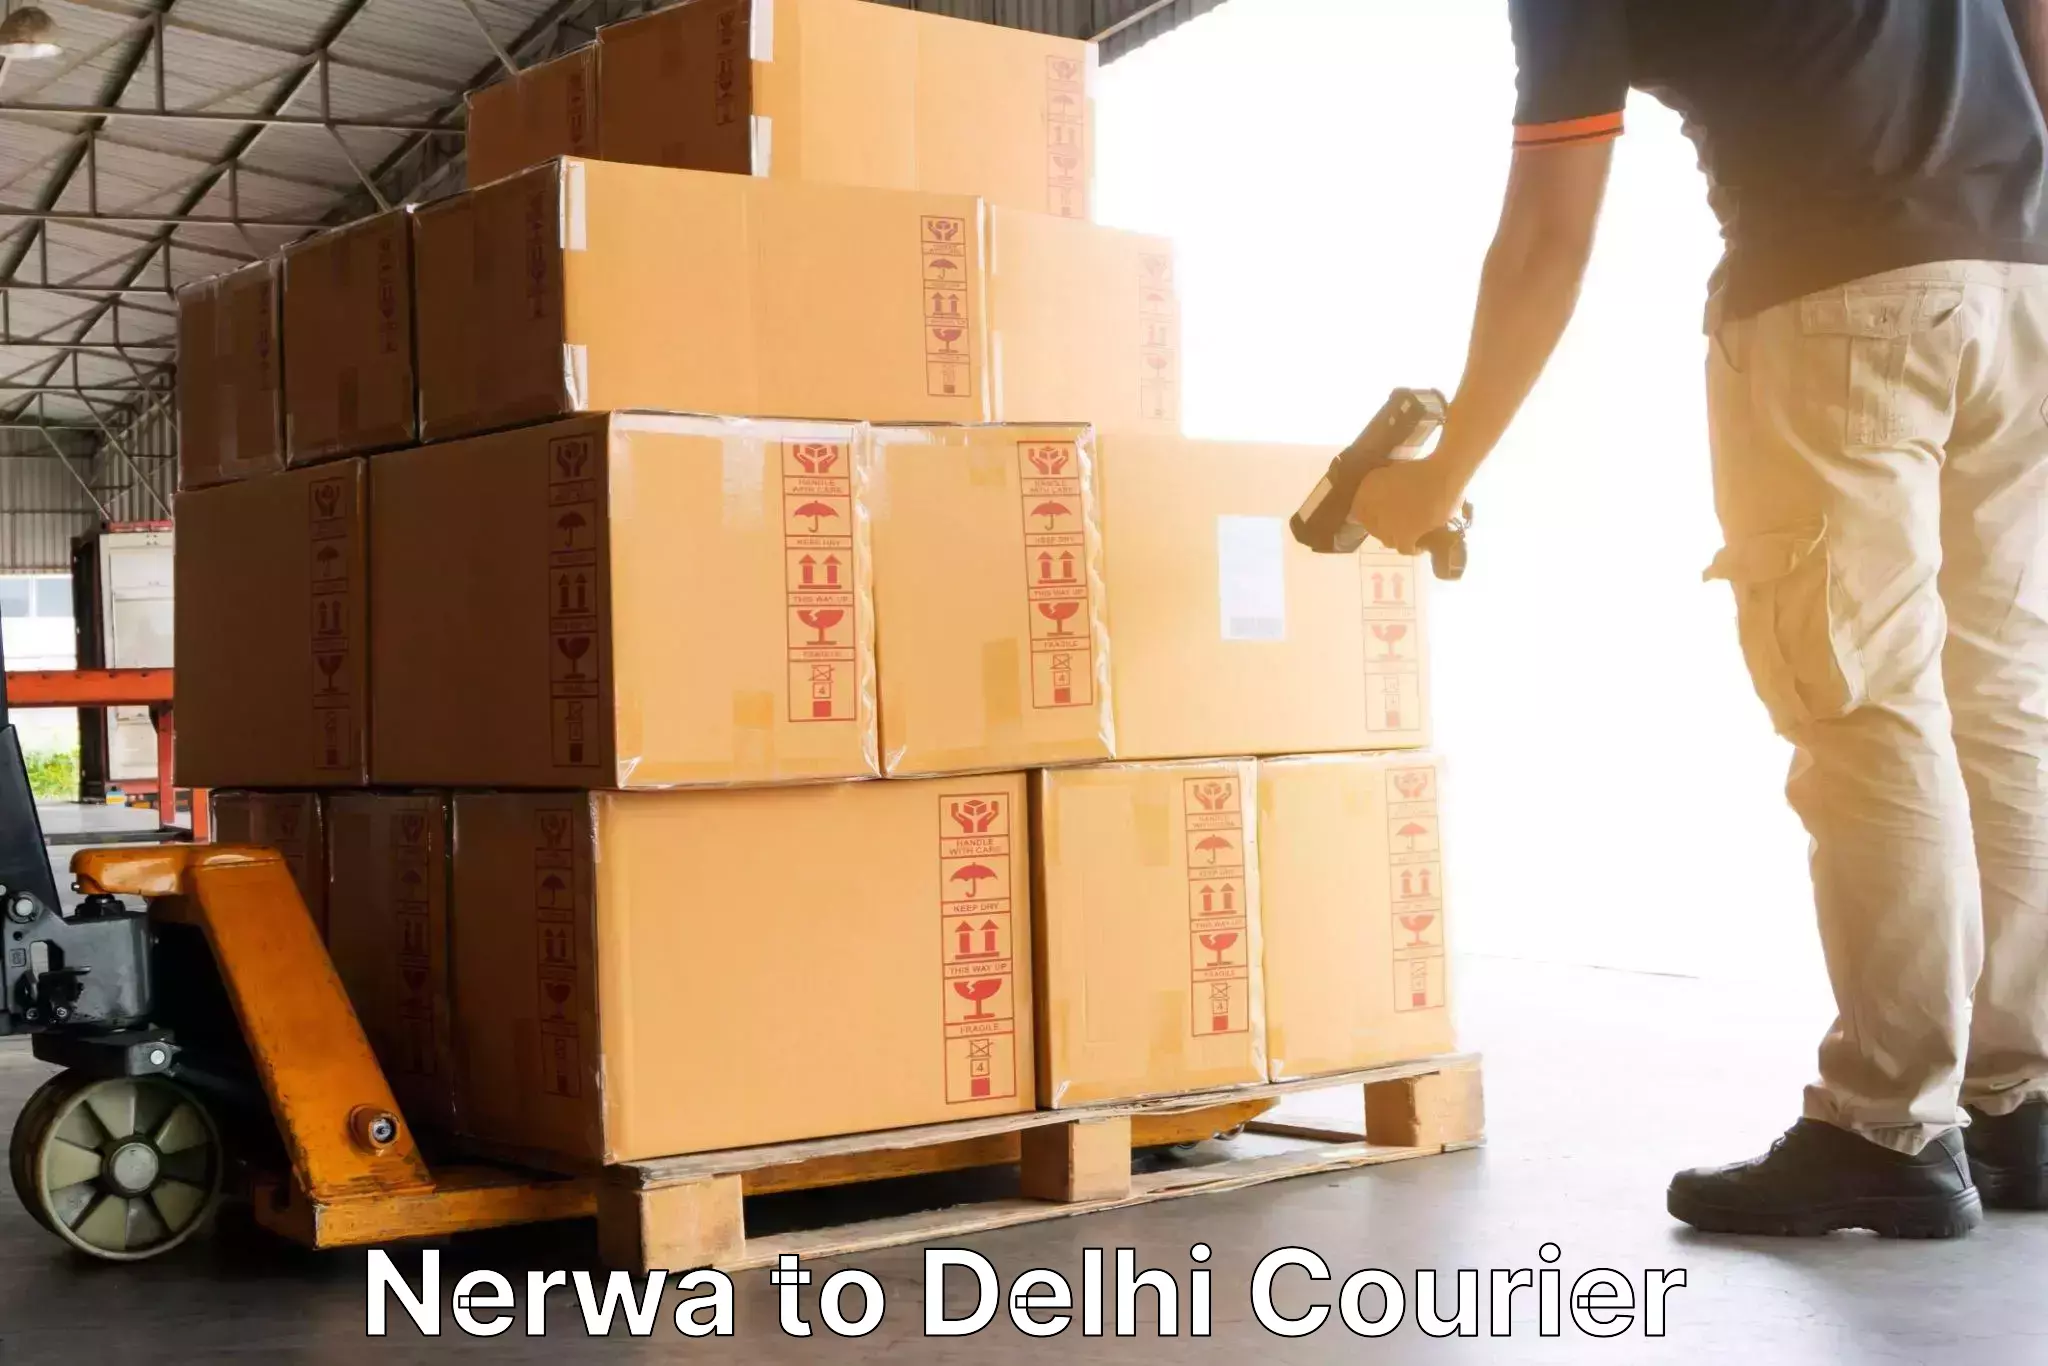 Next day courier Nerwa to NIT Delhi